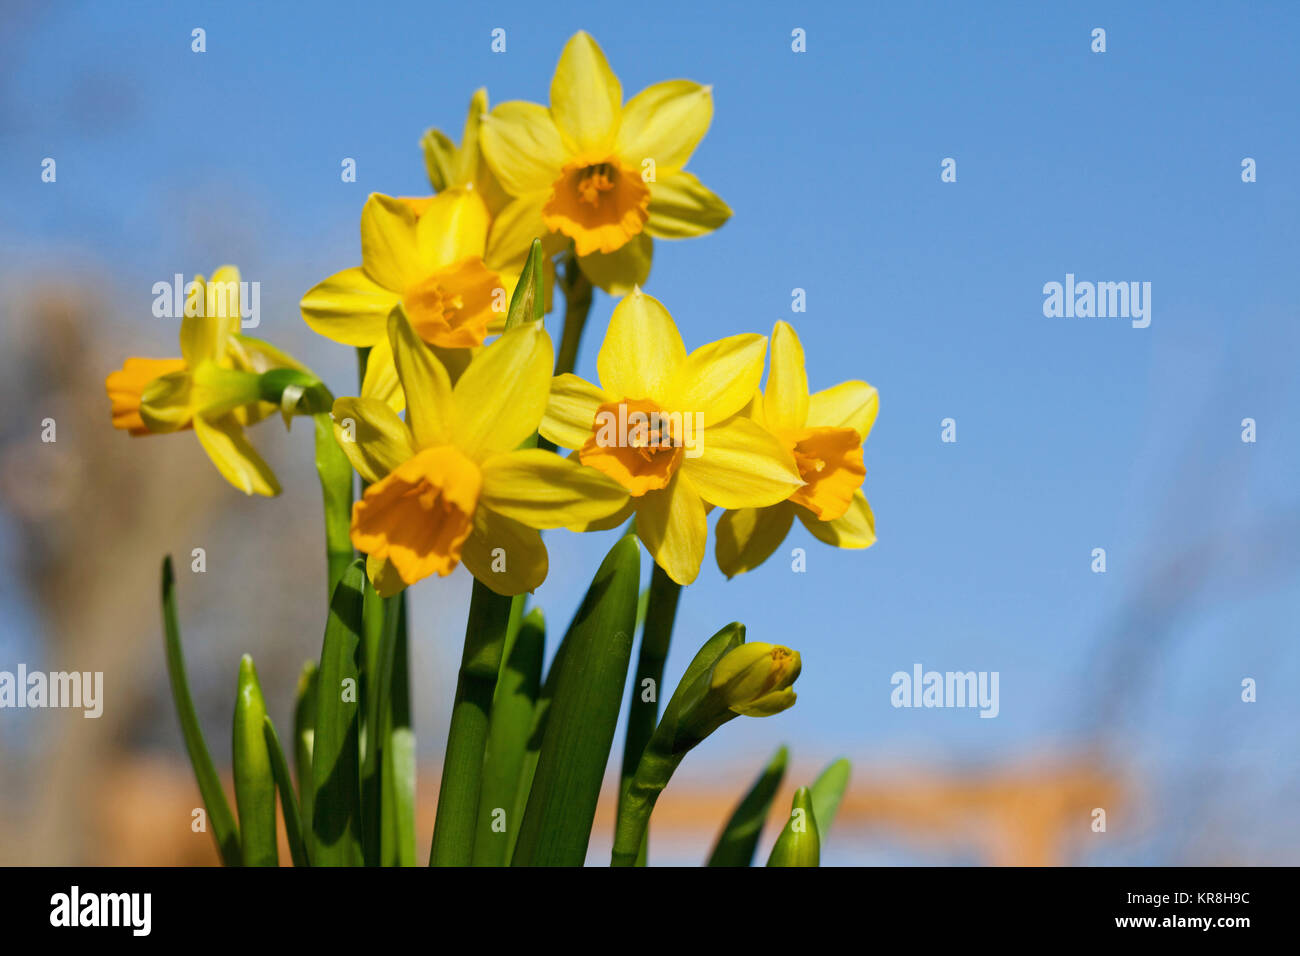 Daffodil, narcisi, giallo fiori che crescono all'aperto contro un cielo blu. Foto Stock